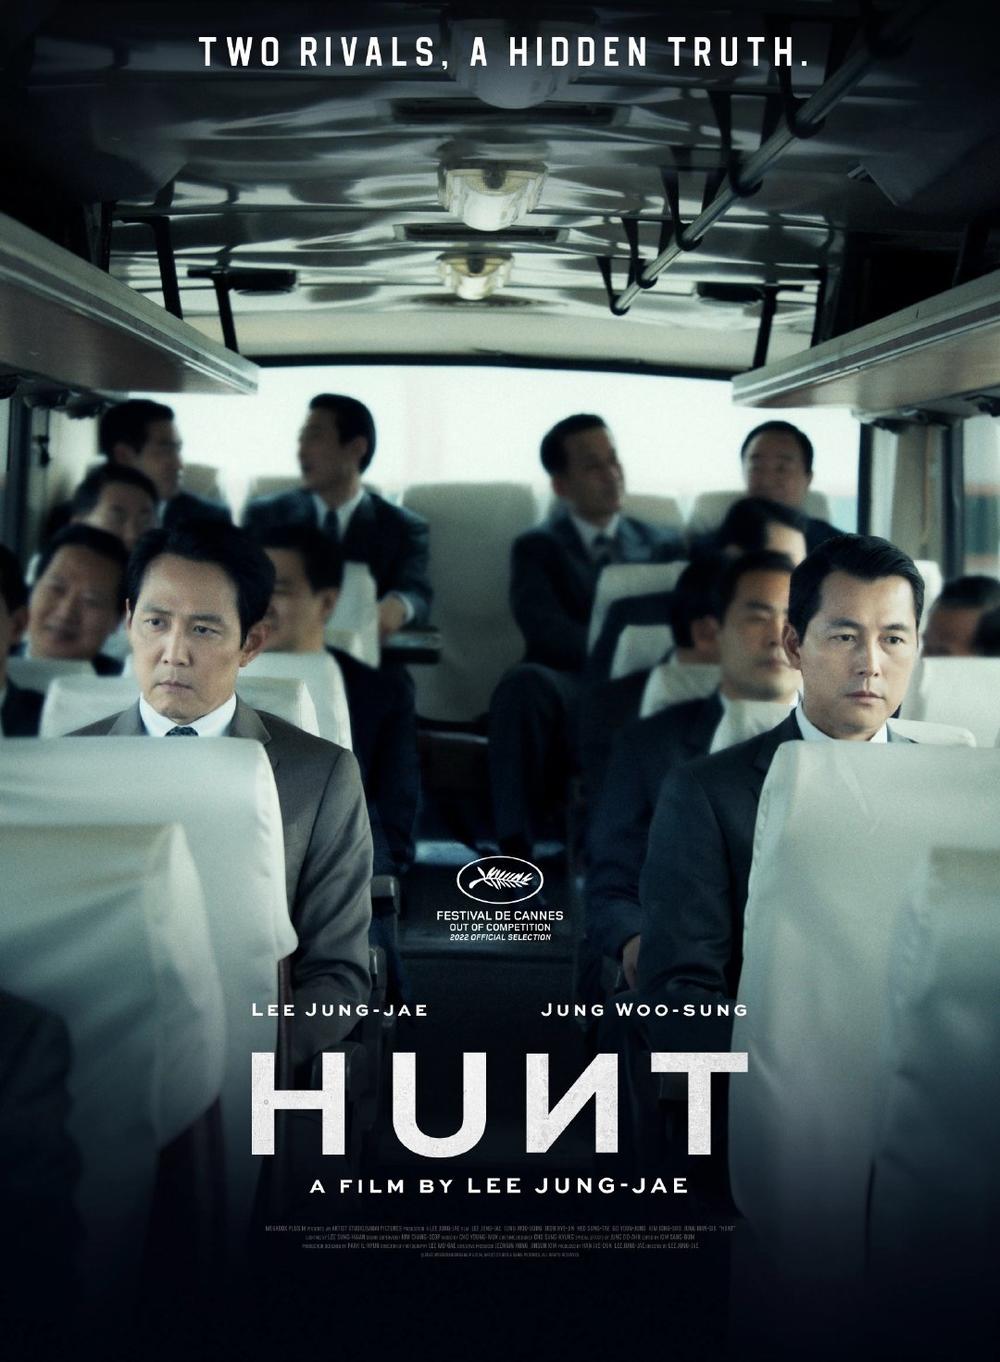 15部韩国电影将在上海北京展映《与神同行》系列、《狩猎》等片在列